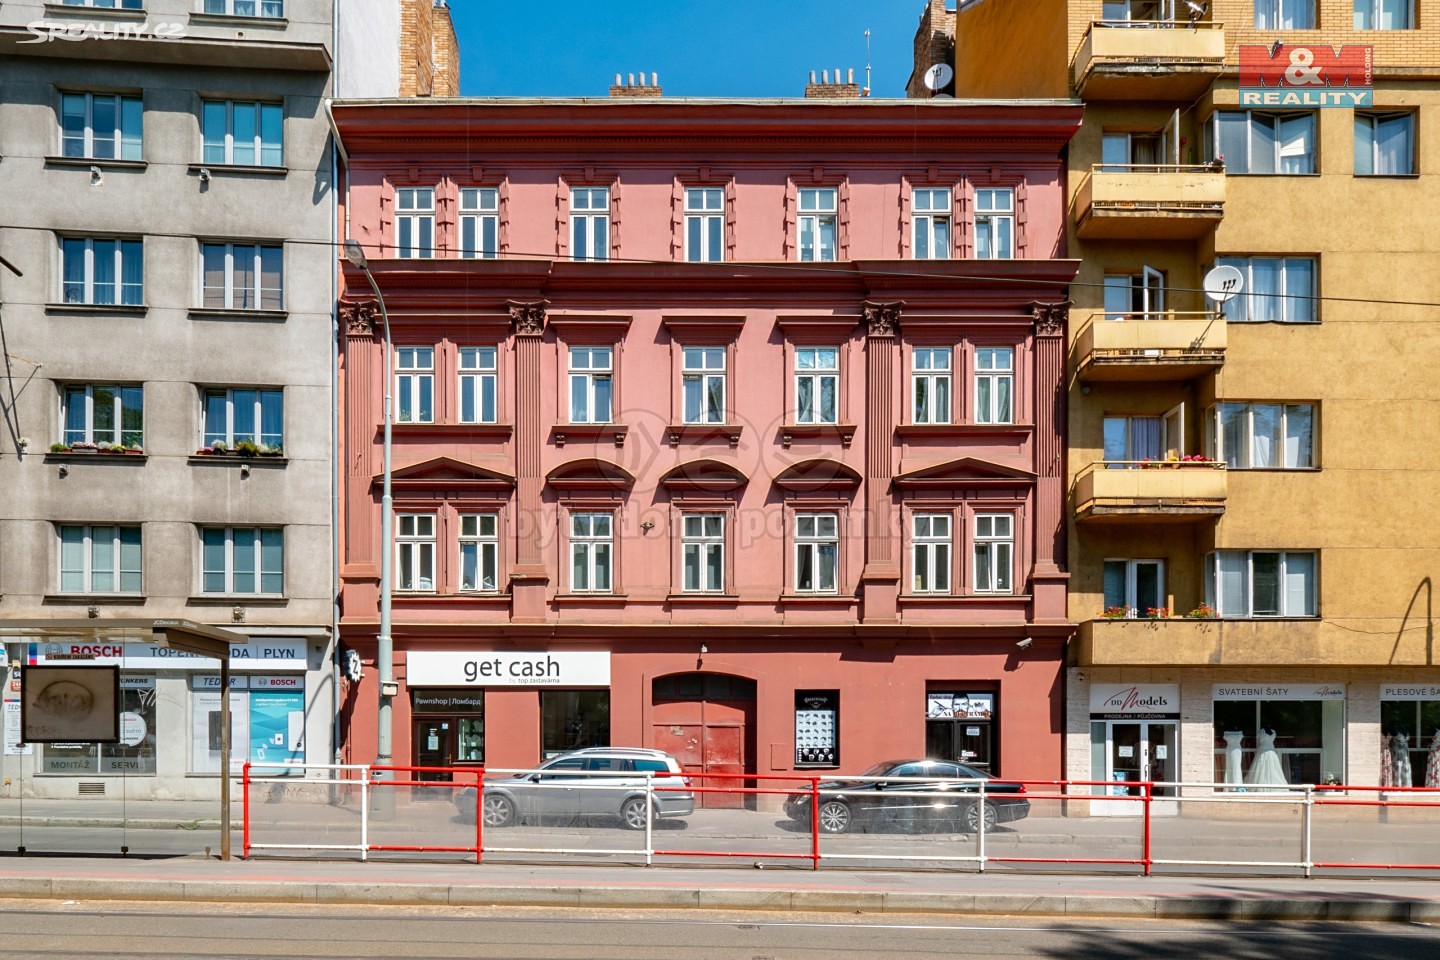 Prodej bytu 3+kk 46 m², Plzeňská, Praha 5 - Smíchov